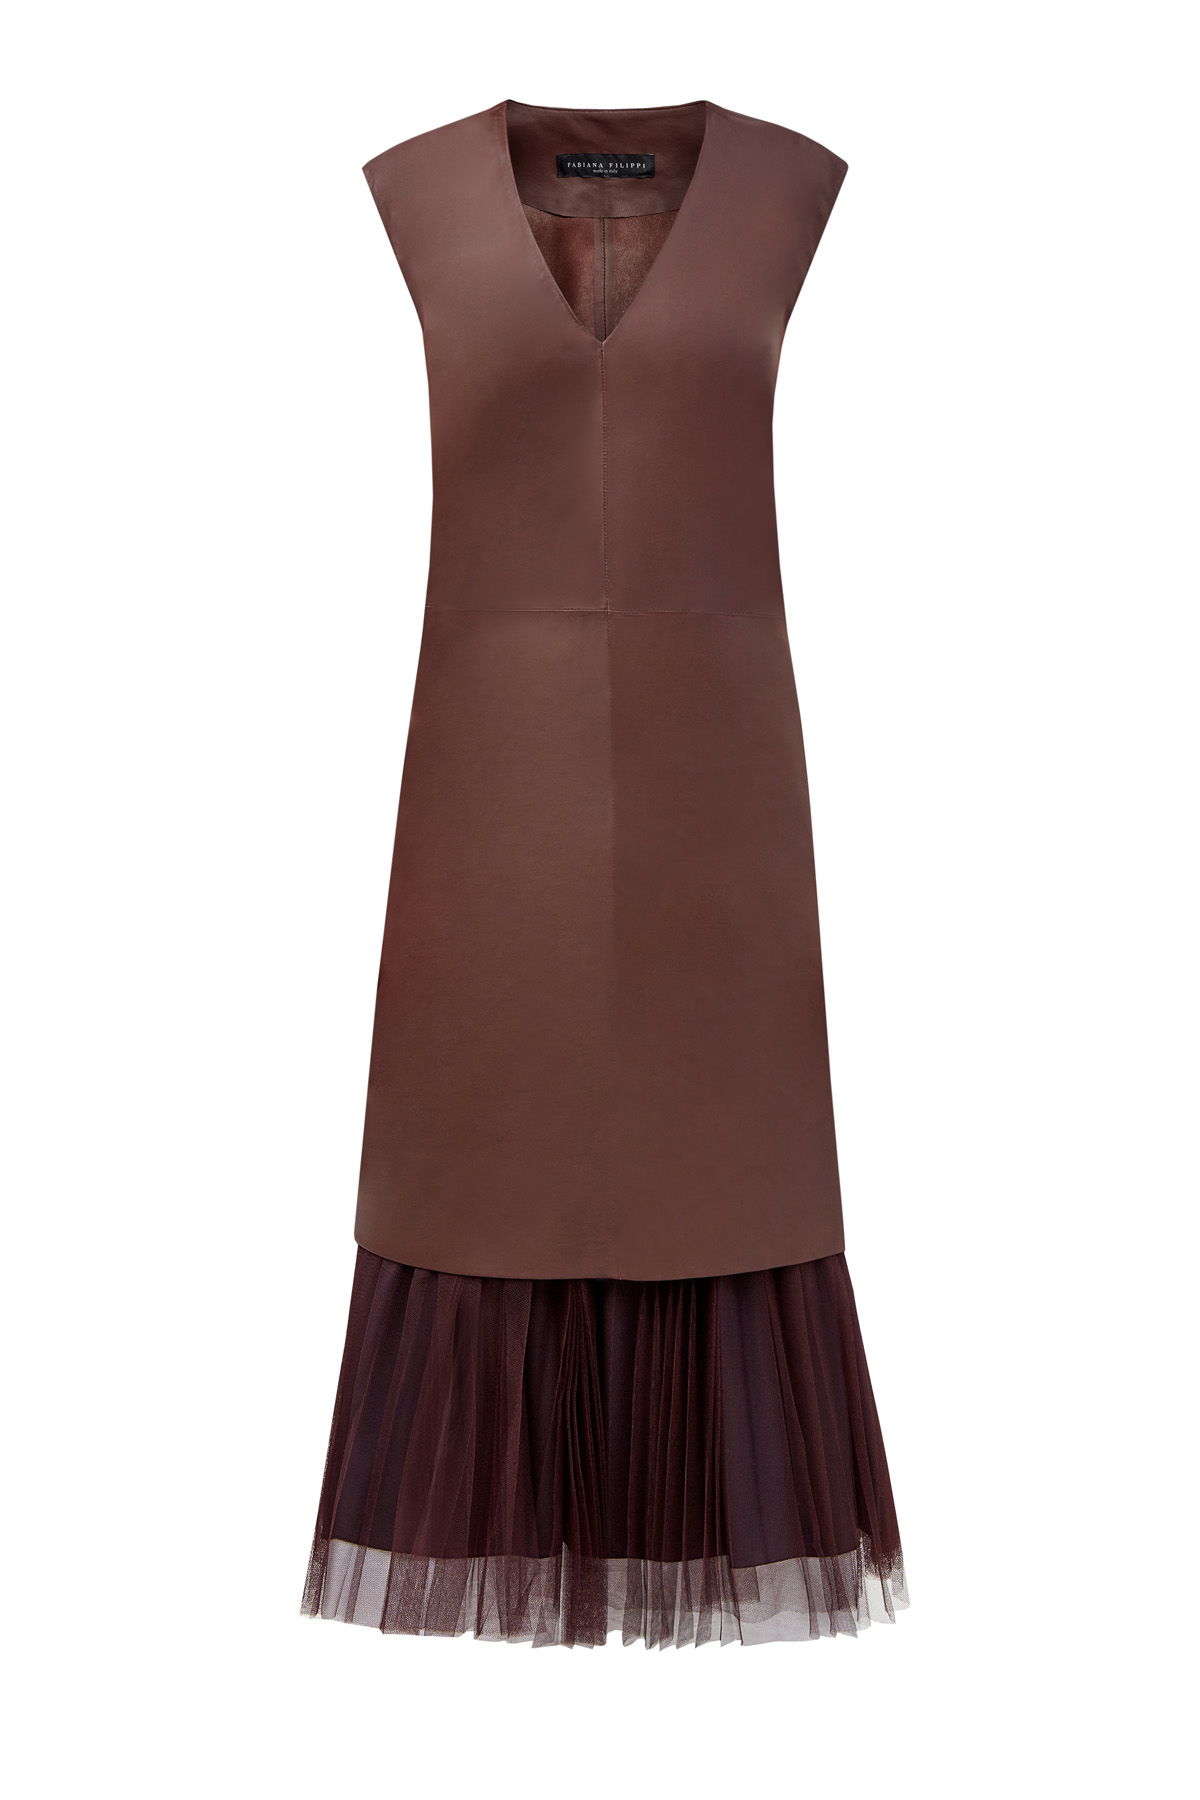 Кожаное платье 2 в 1 со съемной пышной юбкой из вуали